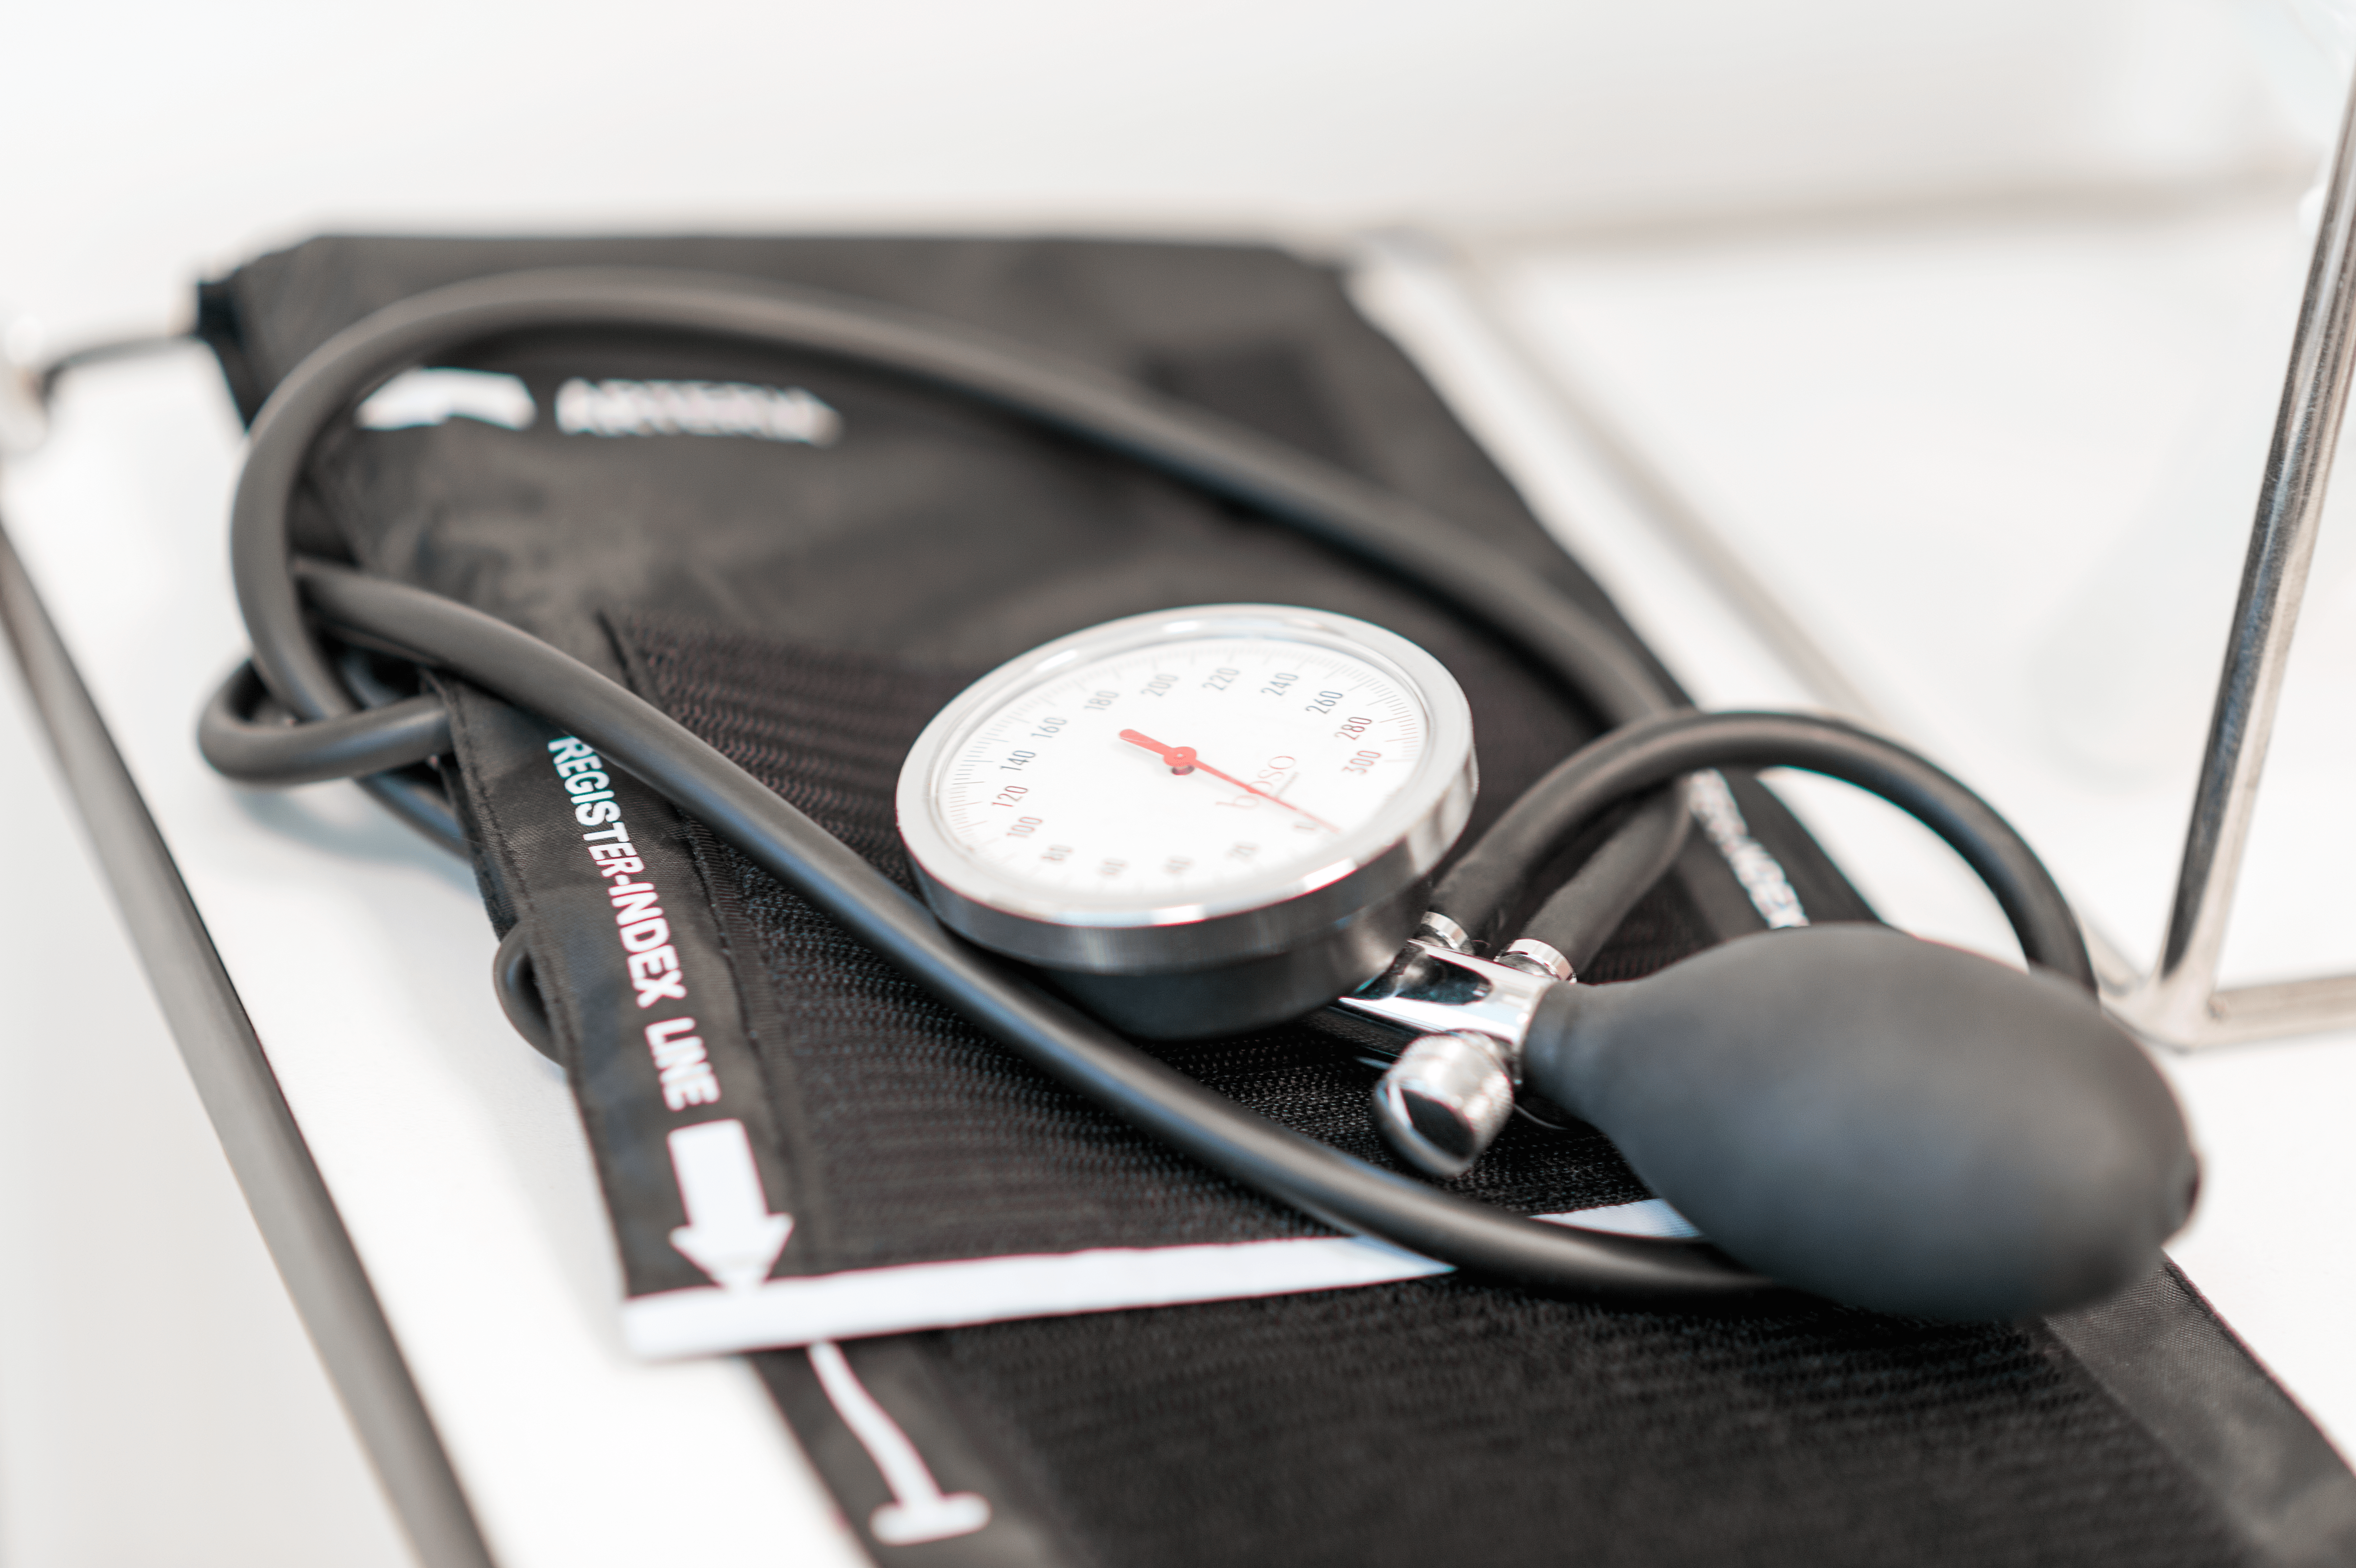 Messgerät für Blutdruck